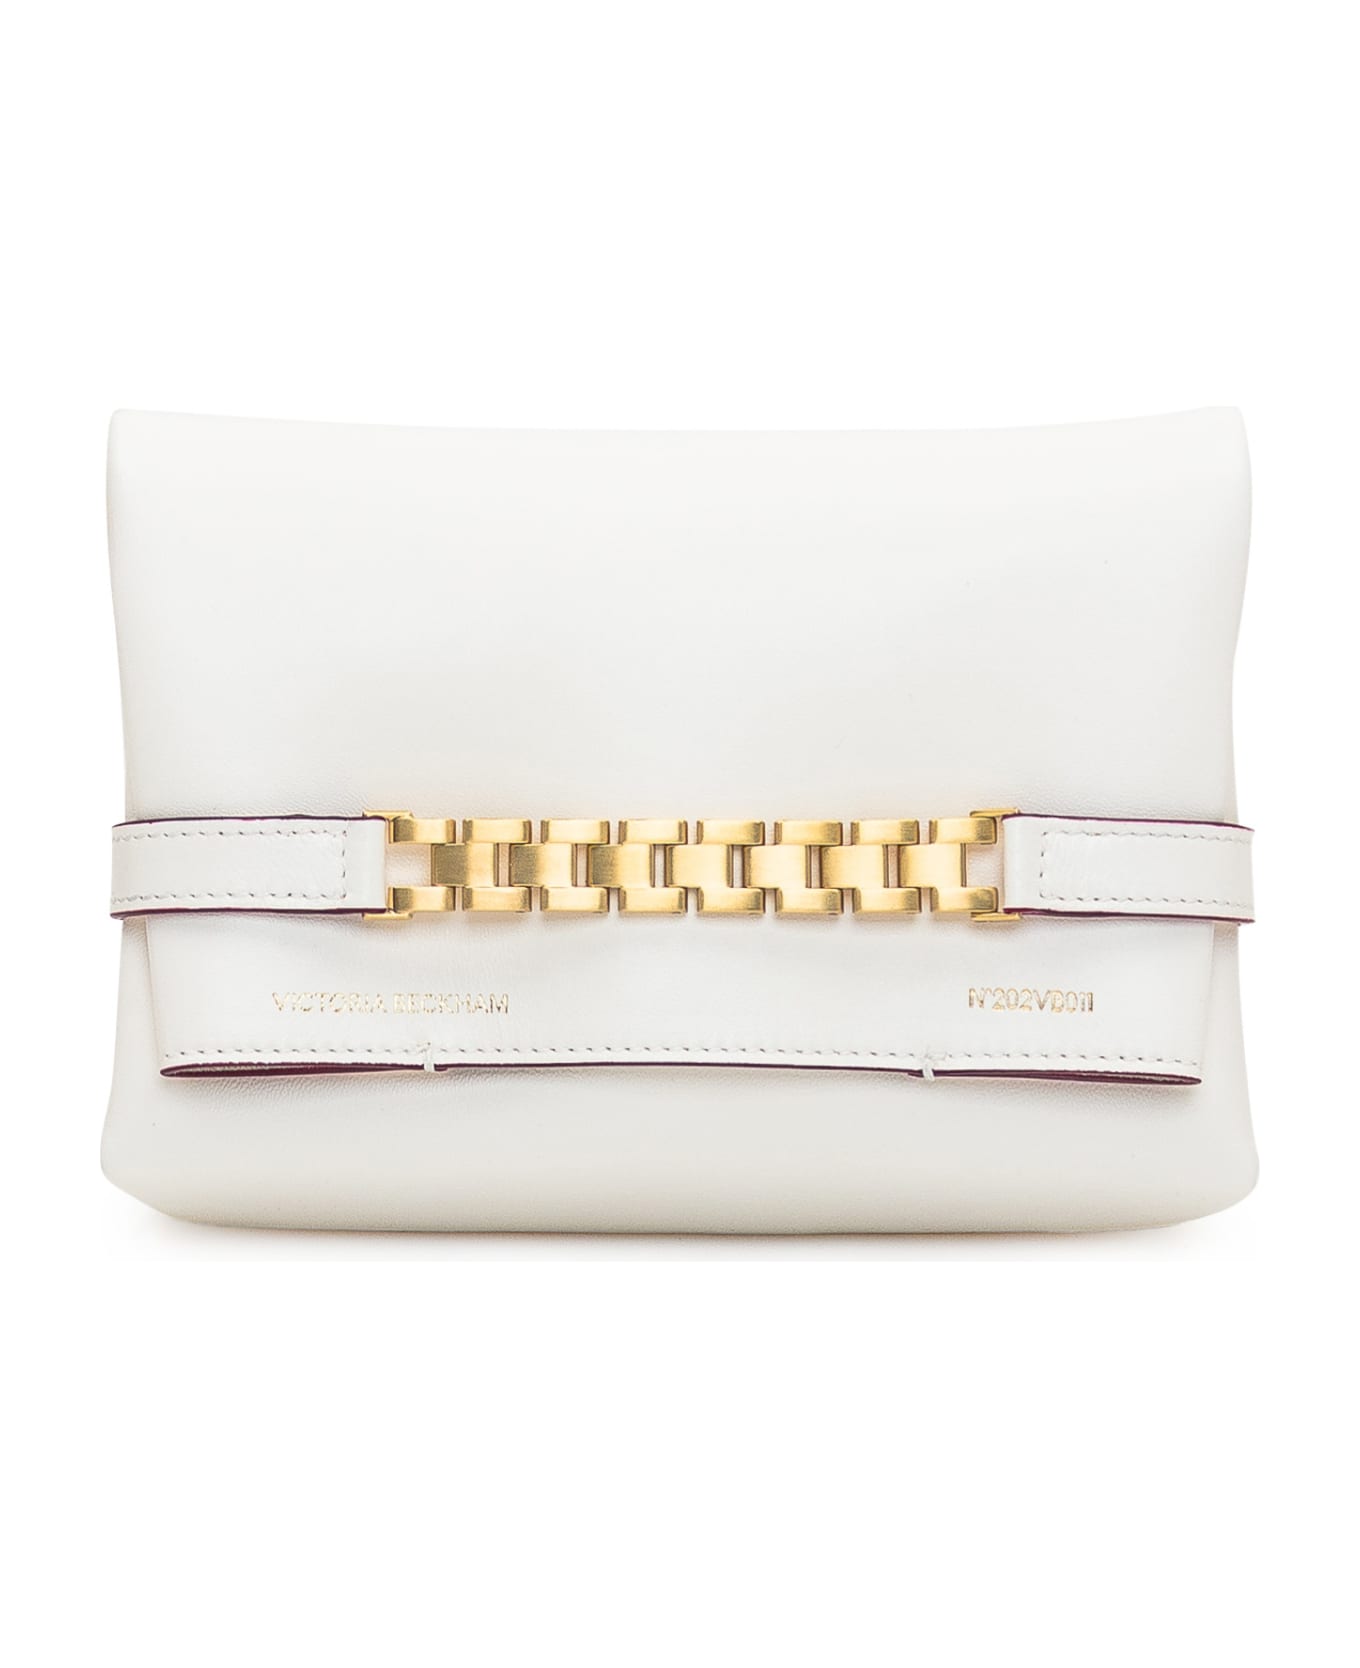 Victoria Beckham Mini Pouch Bag - WHITE クラッチバッグ